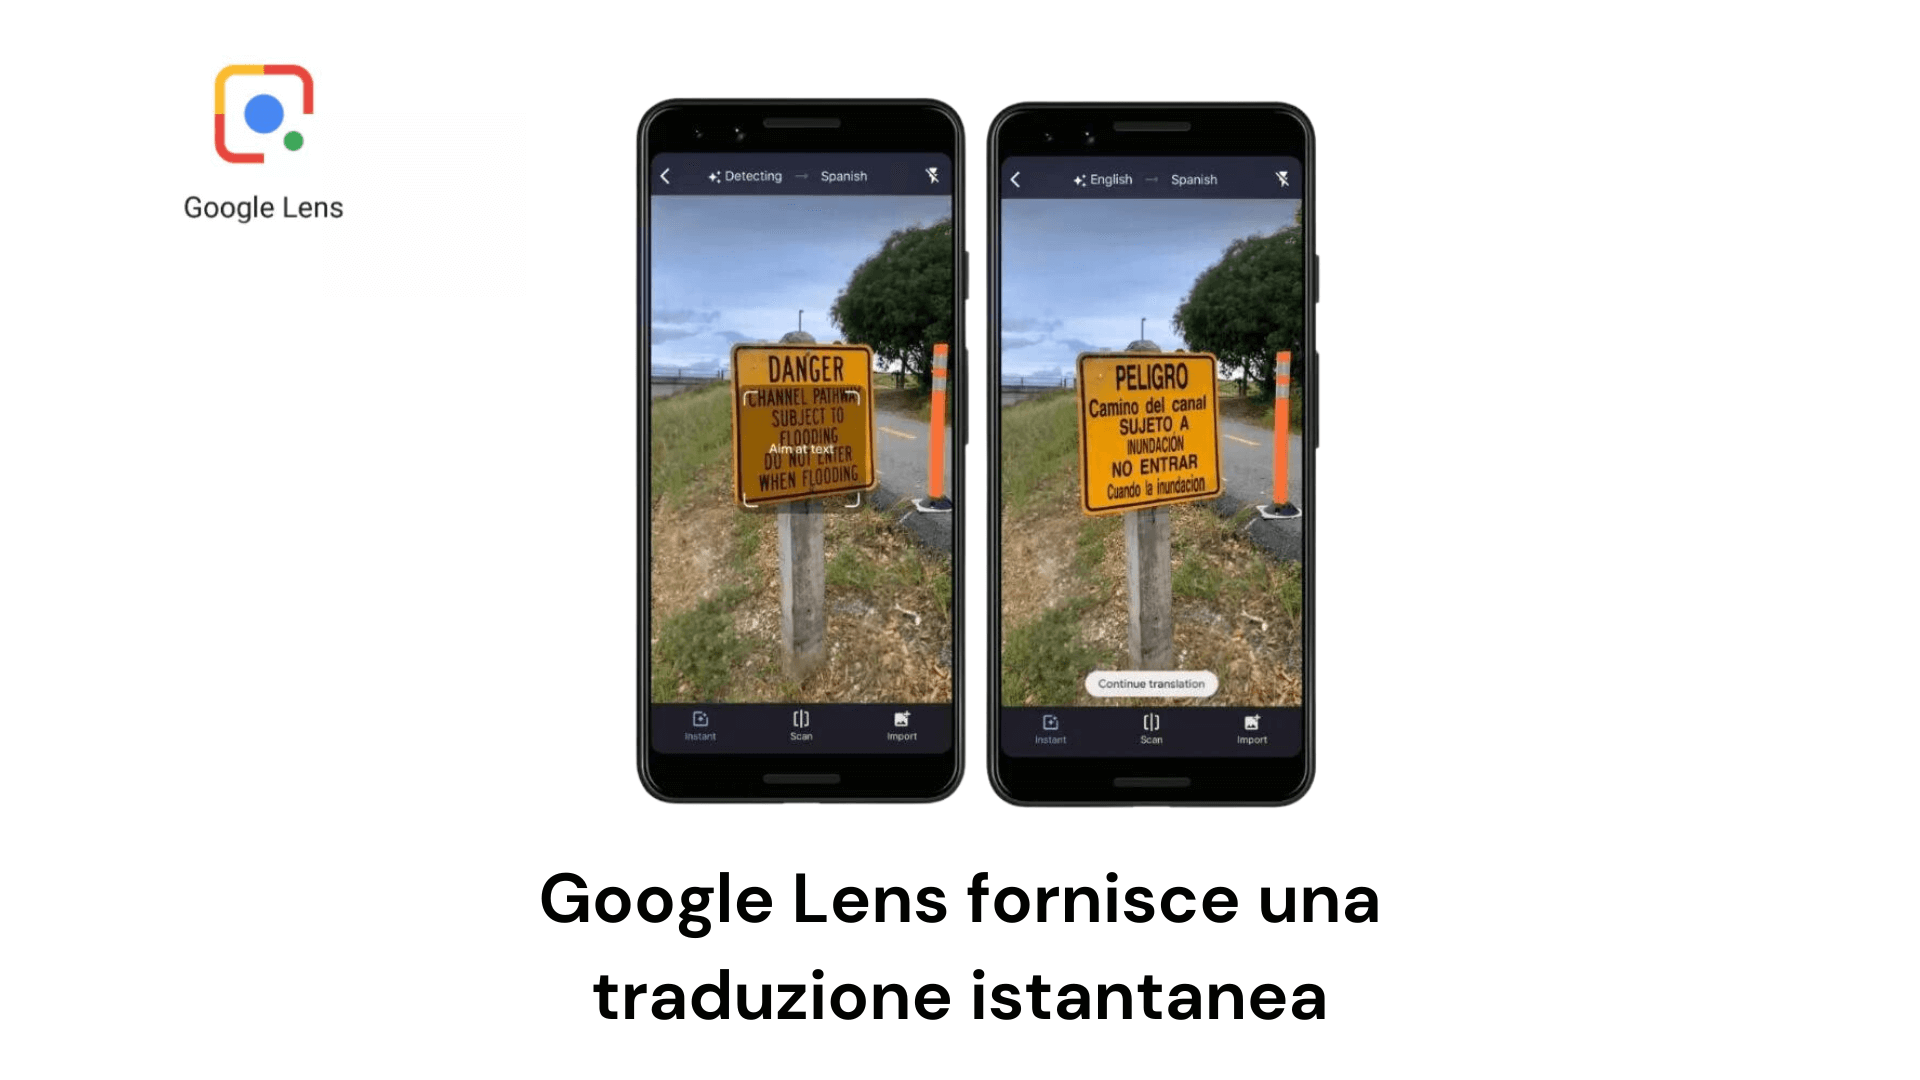 traduzione istantanea di una cartello dall'inglese allo spagnolo con Google Lens